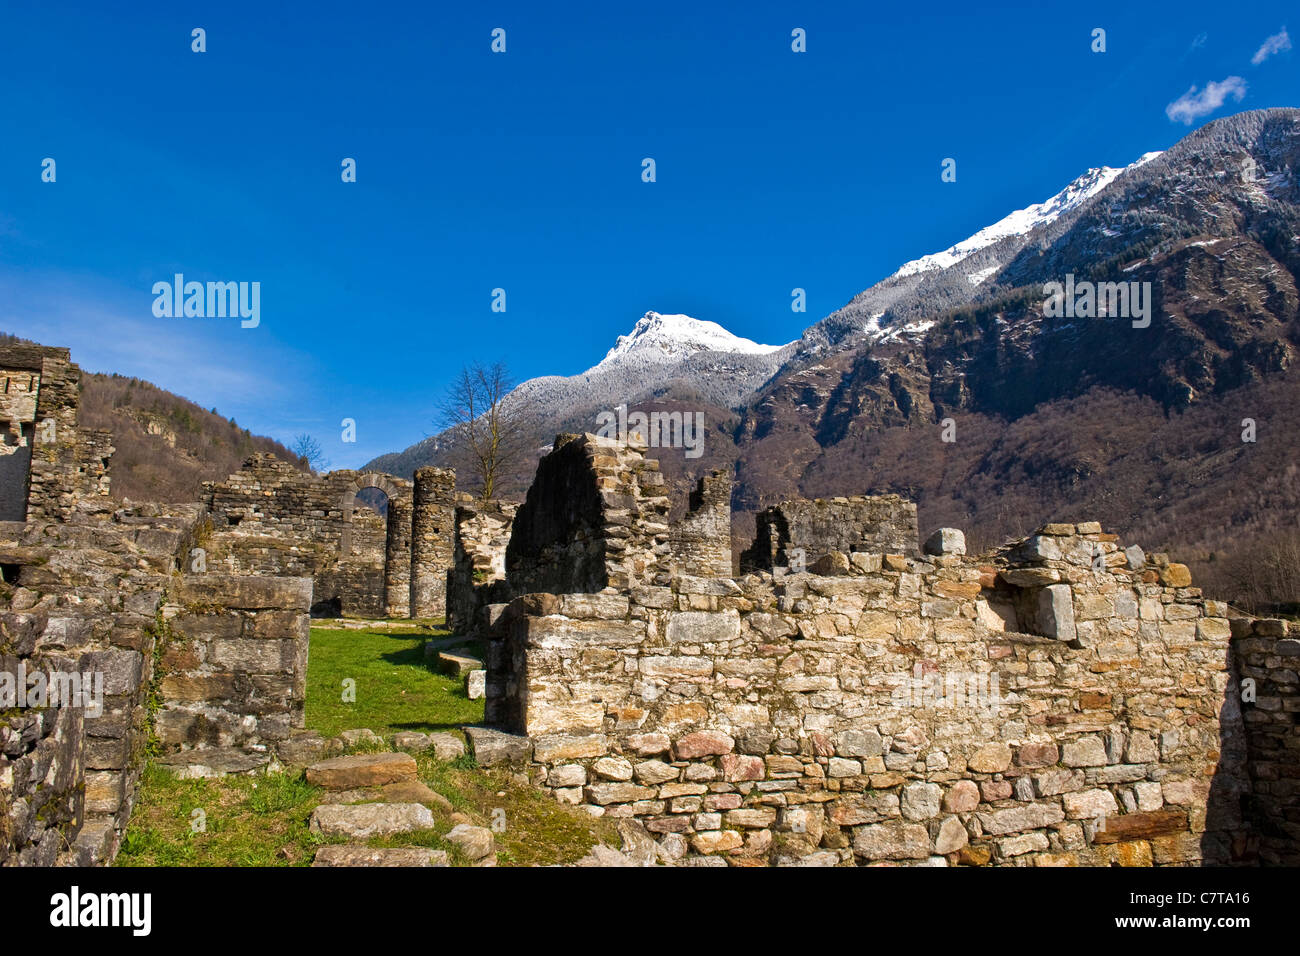 Switzerland, Canton Ticino, Blenio valley, Semione, ruins of the Serravalle castle Stock Photo